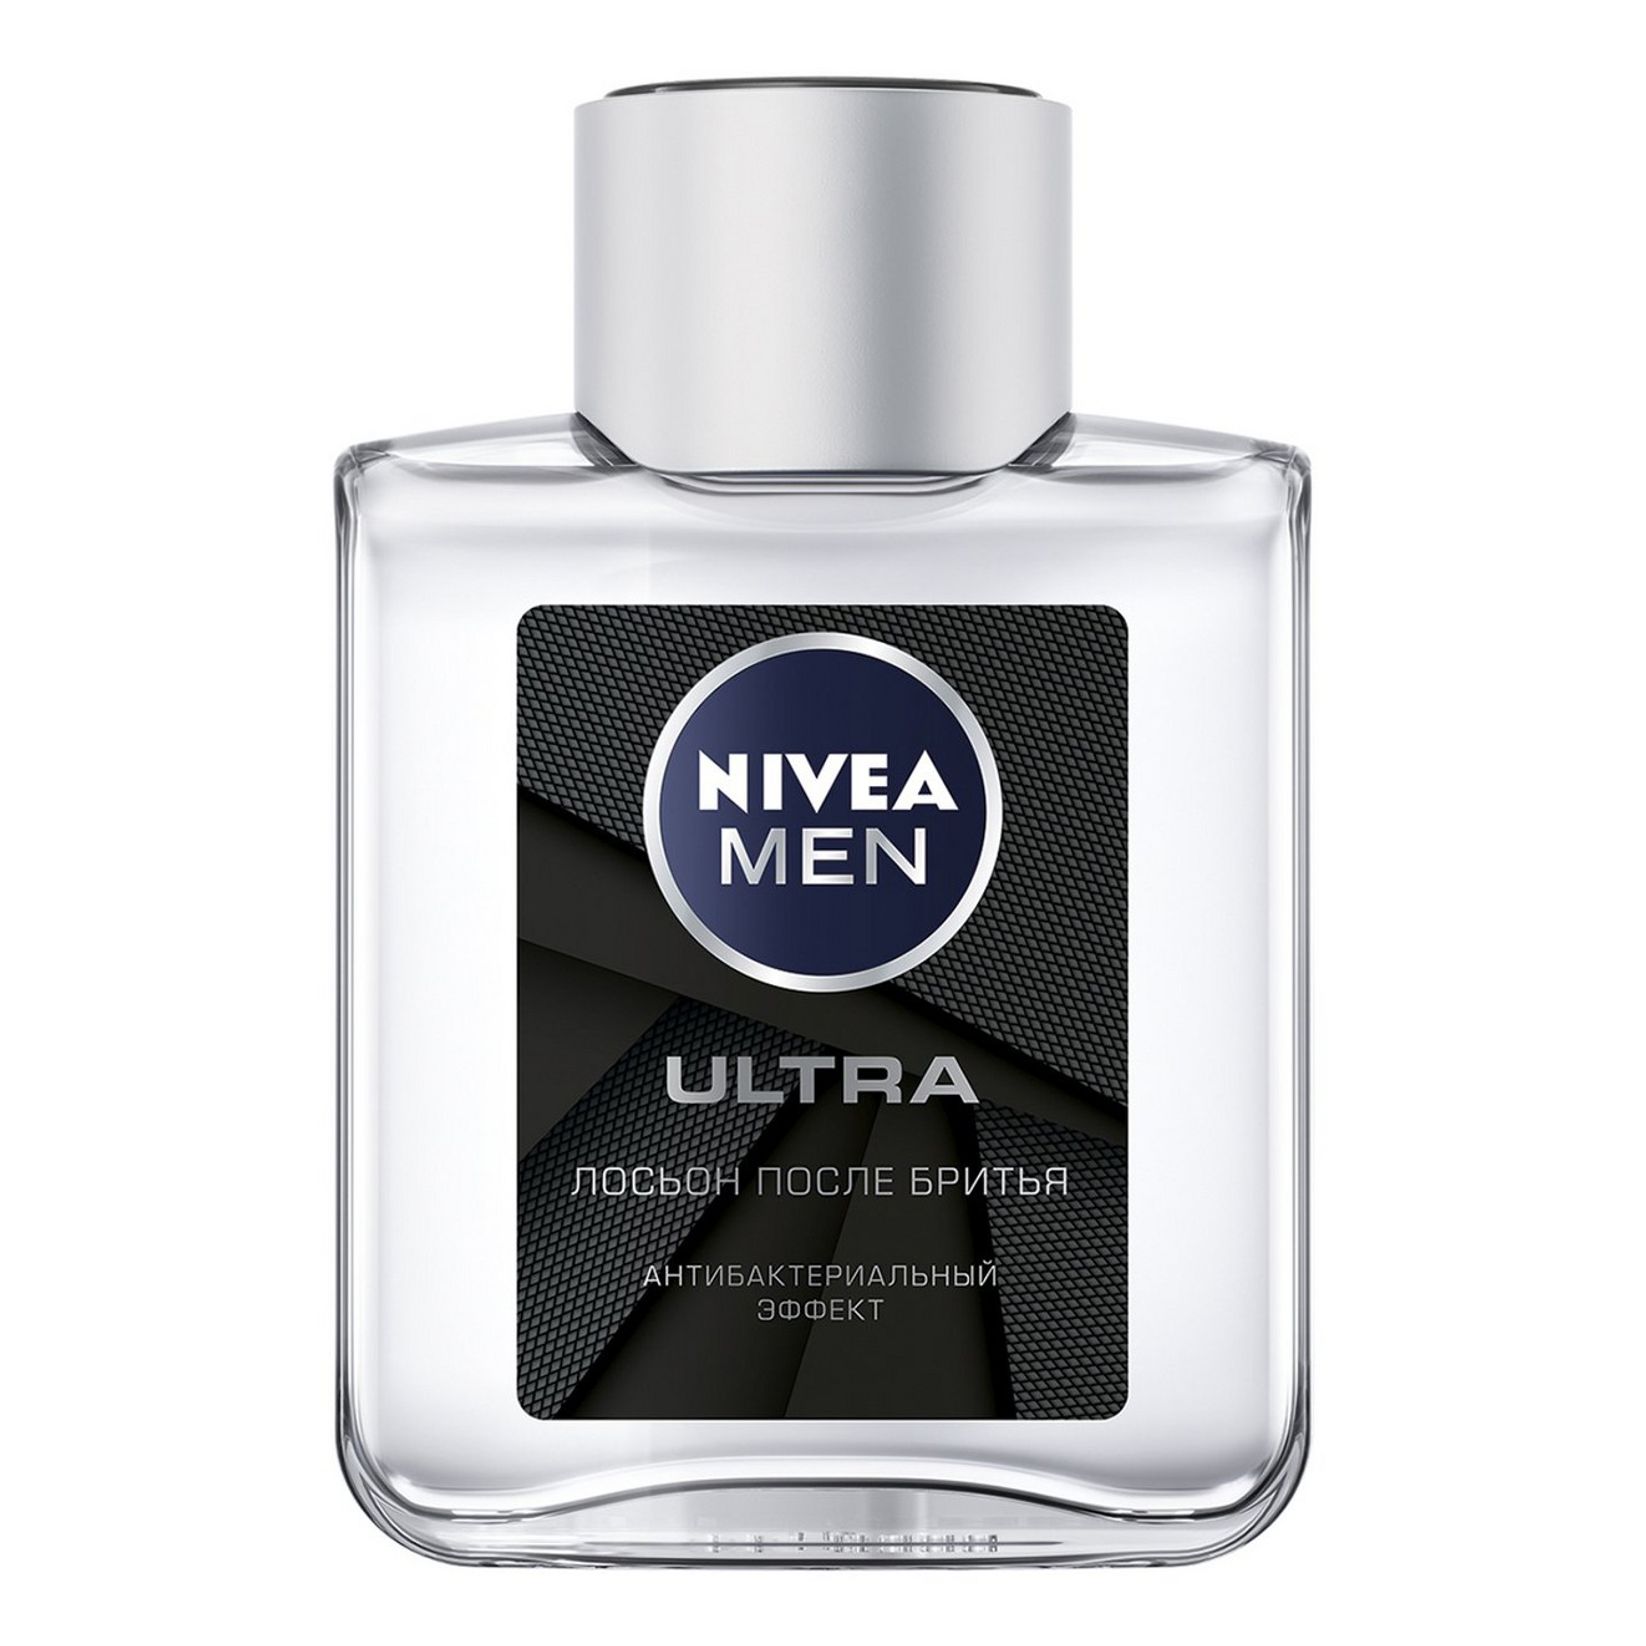 NIVEA MEN Ultra Лосьон после бритья Антибактериальный, 100 мл